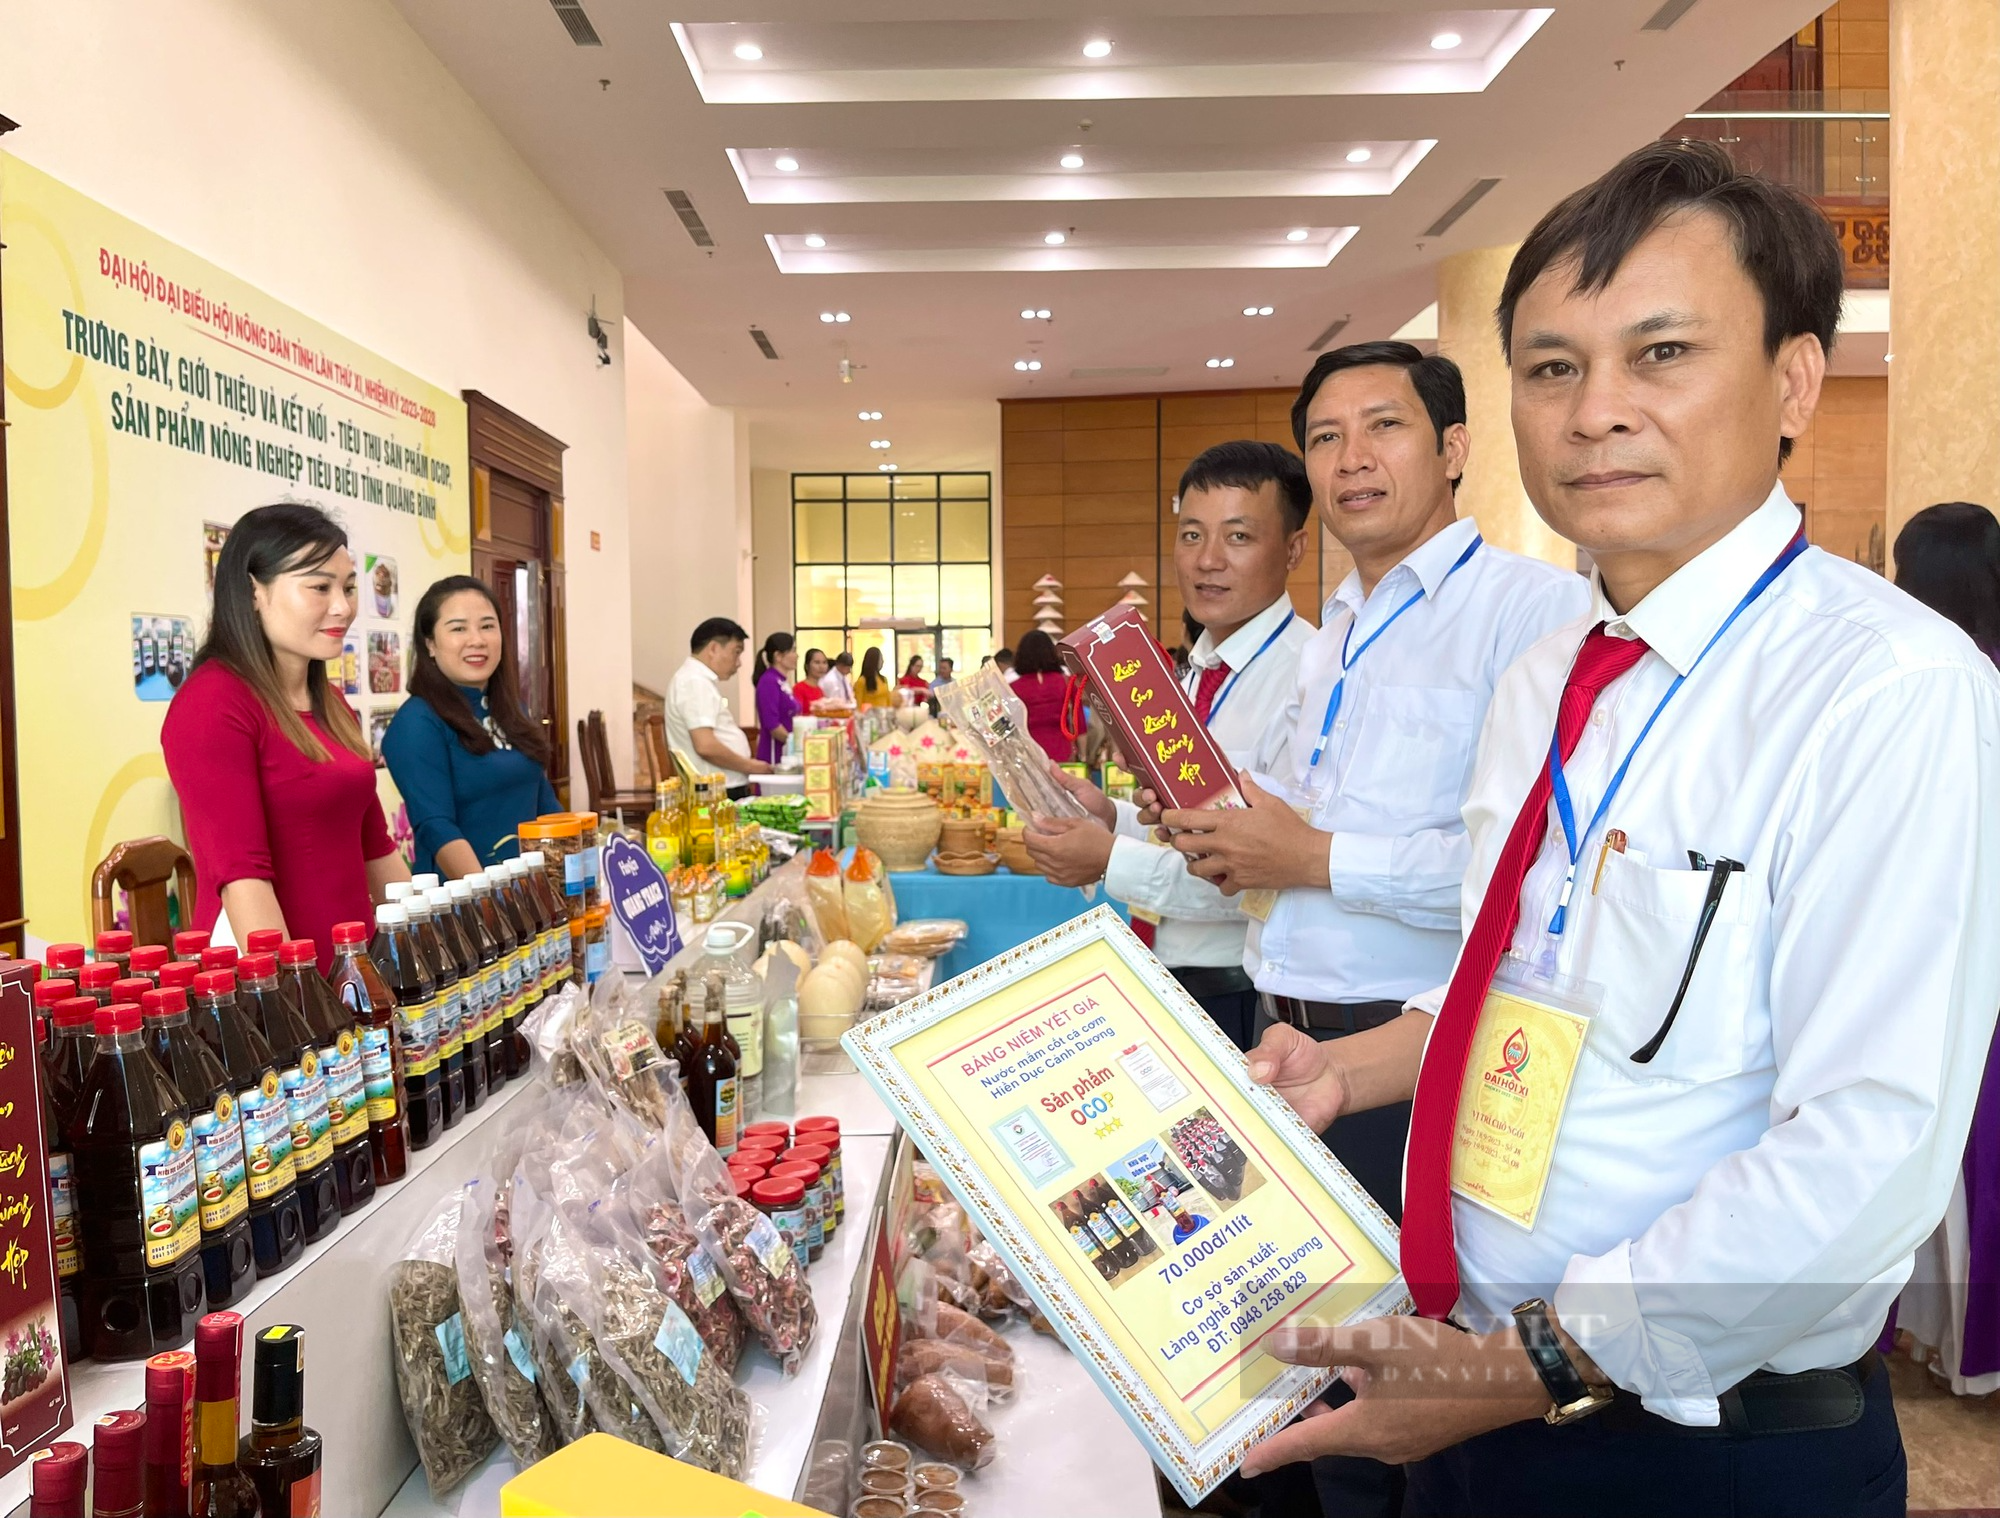 300 mặt hàng nông sản, thực phẩm sạch trưng bày chào mừng Đại hội Đại biểu Hội Nông dân tỉnh Quảng Bình - Ảnh 4.